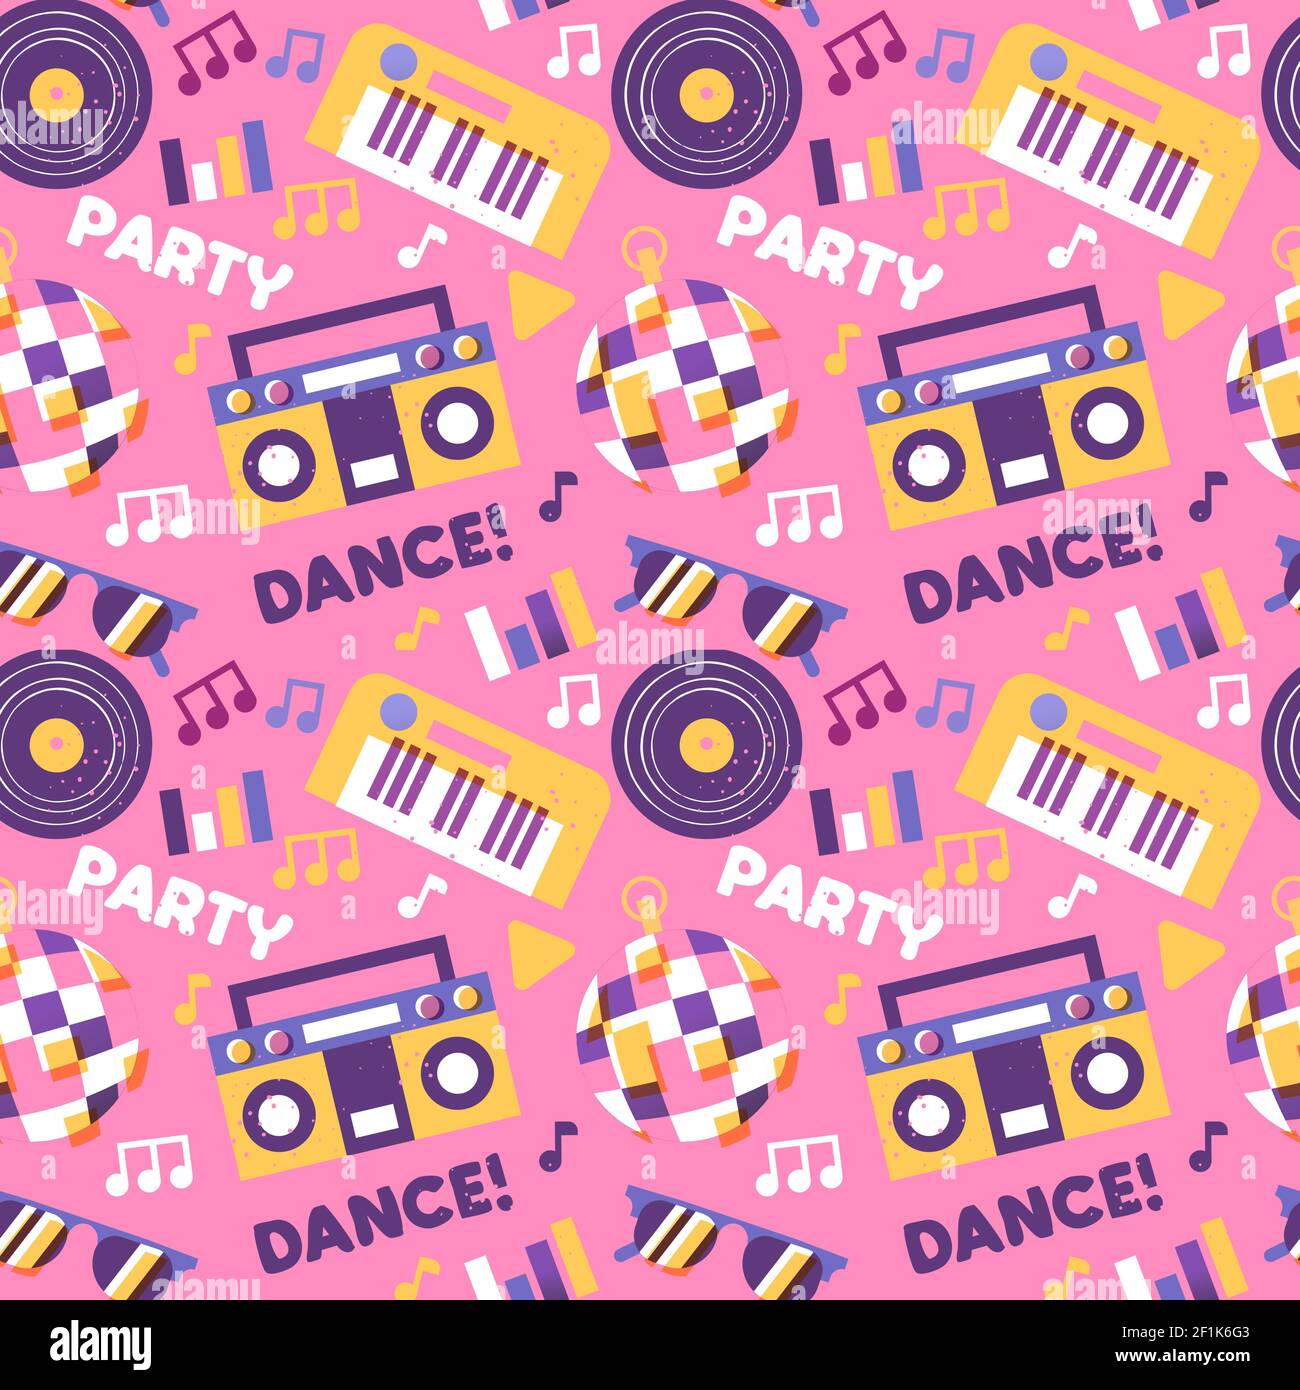 Party-Musik nahtlose Muster mit Cartoon-Klavier, Disco-Ball, dj Vinyl und mehr elektronische Geräte Symbole. Spaß Tanz Feier Hintergrund Design. Stock Vektor